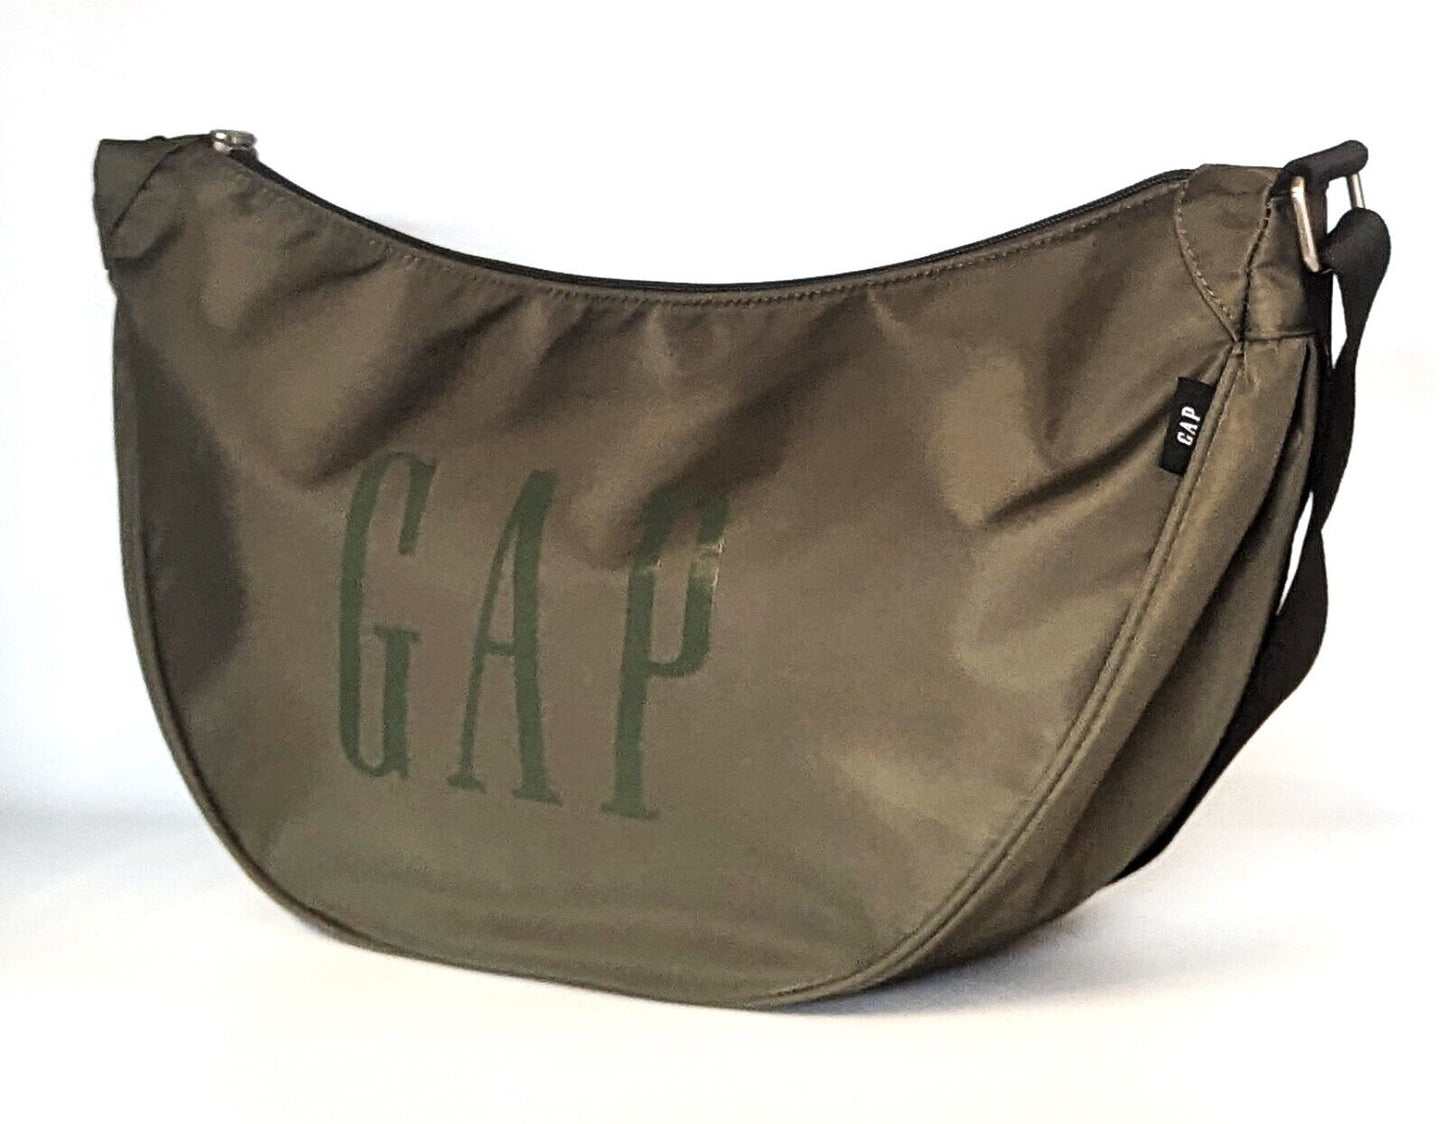 Gap womens logo crossbody bag RRP £49